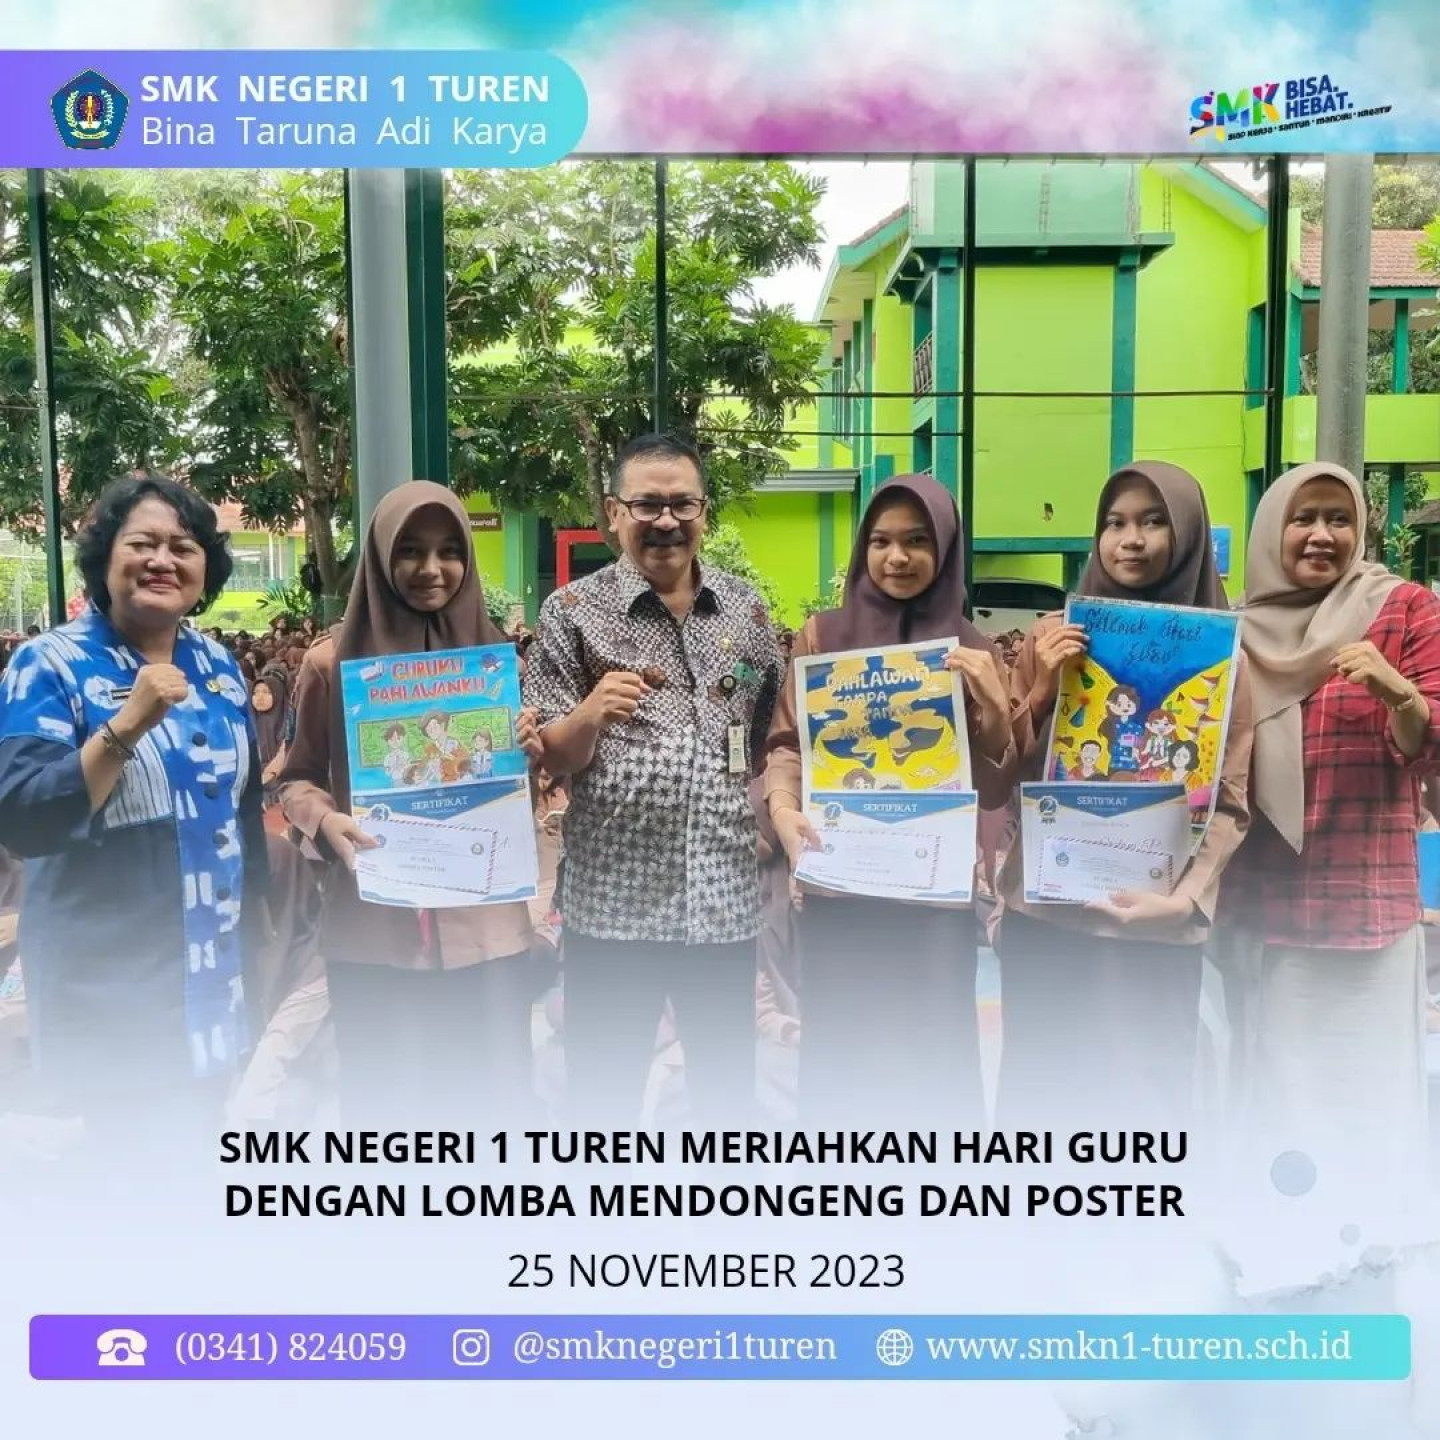 SMK Negeri 1 Turen Meriahkan Hari Guru dengan Lomba Mendongeng dan Poster